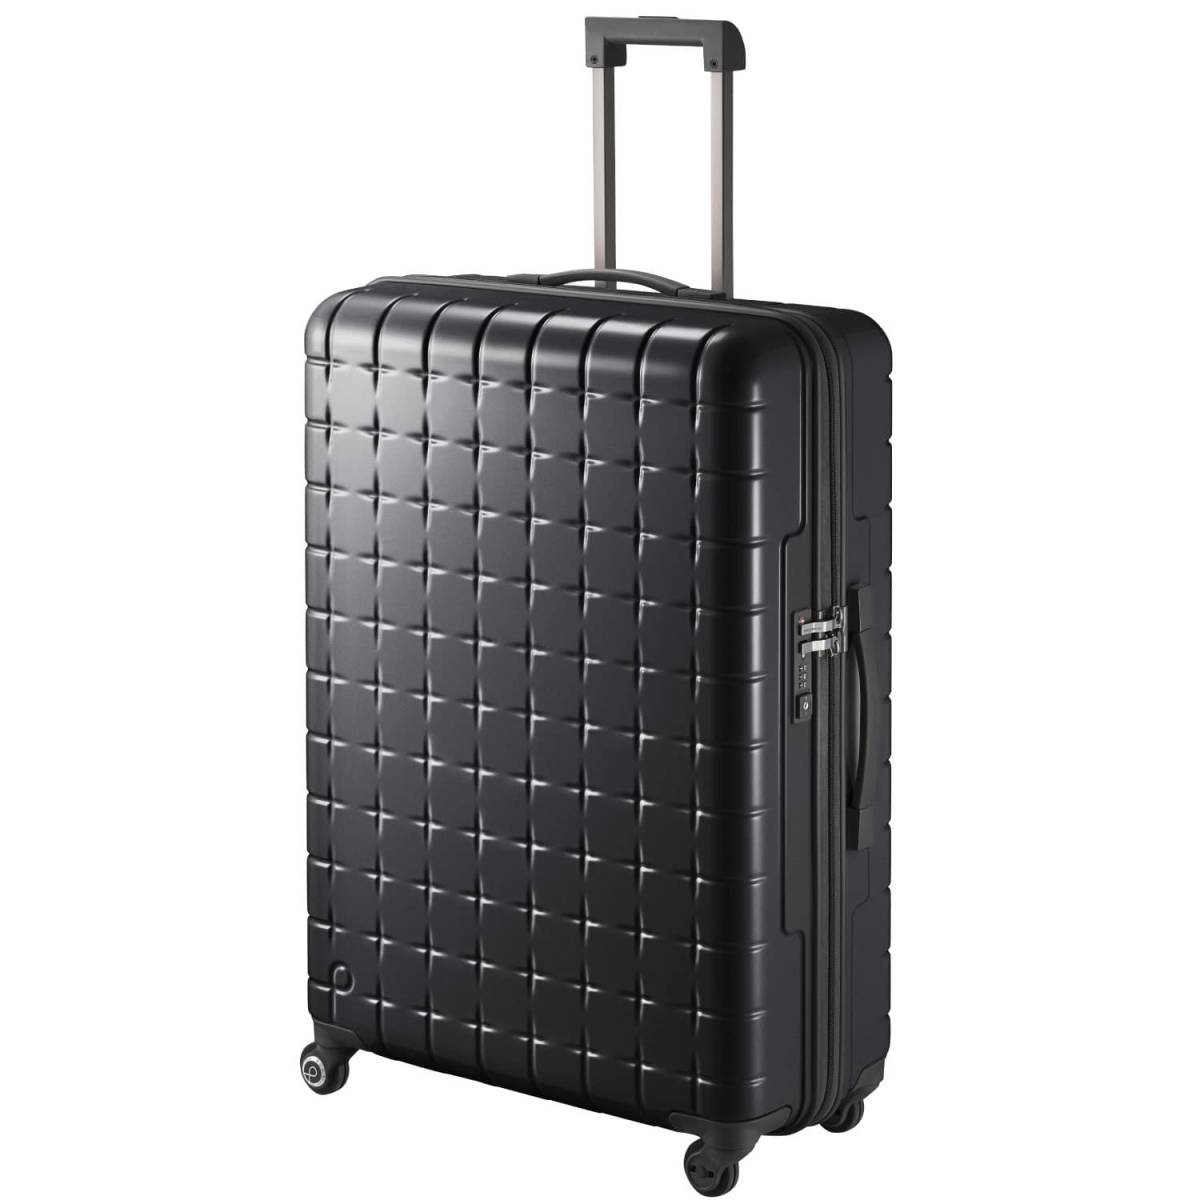 激安商品 新品未使用プロテカ スーツケース 旅行用バッグ/キャリー